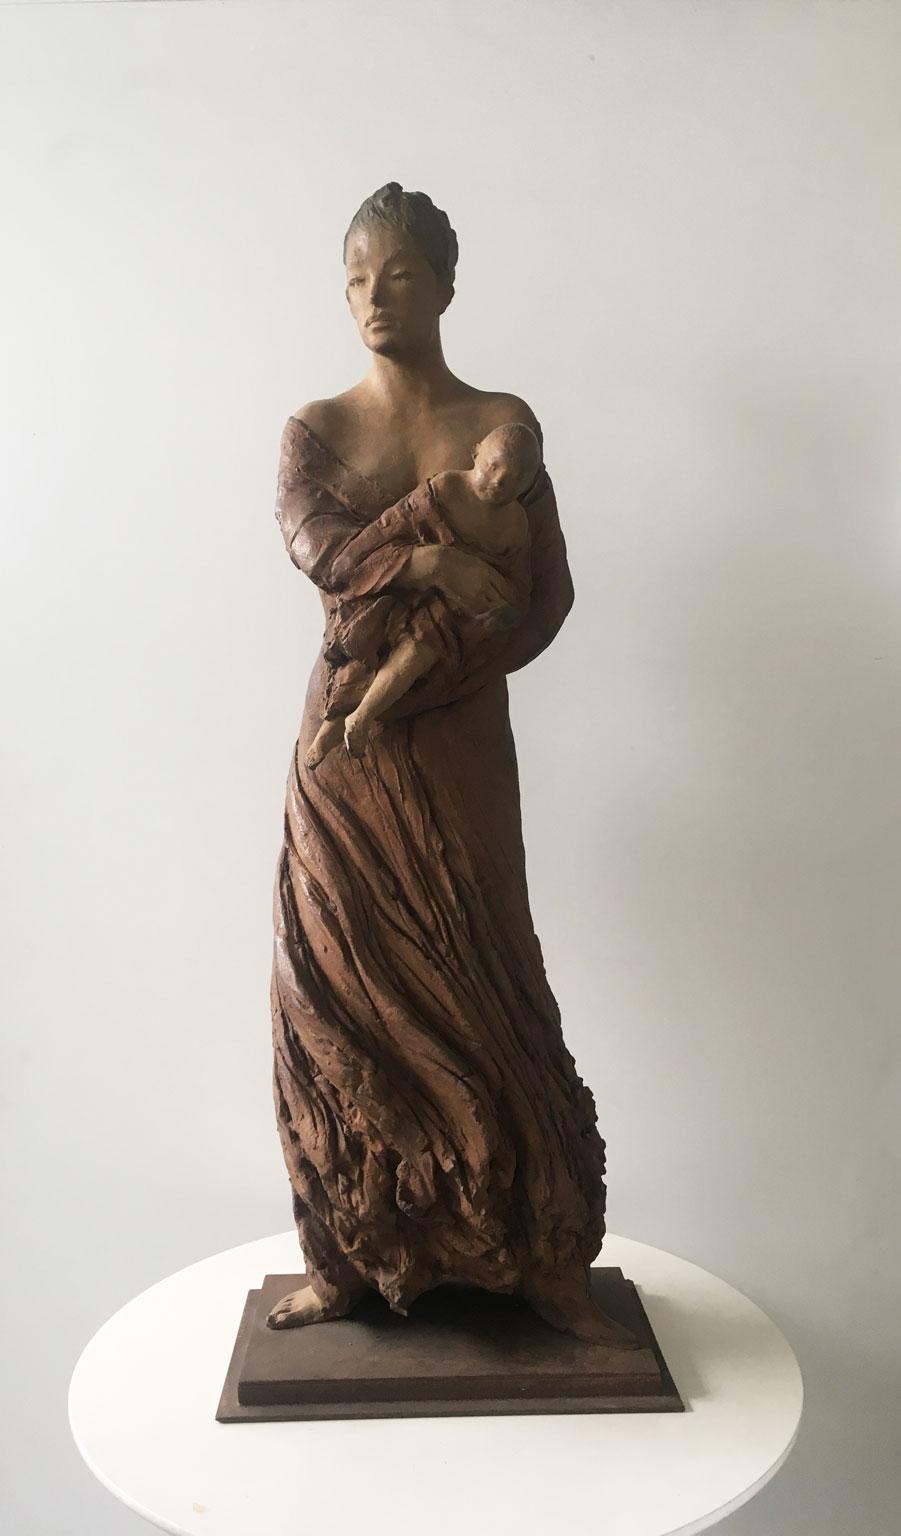 Il s'agit d'une sculpture en bronze intense créée par l'artiste italien Ugo Riva, en 2006. Bronze à la cire perdue sur socle en fer.
Le titre de cette œuvre est 